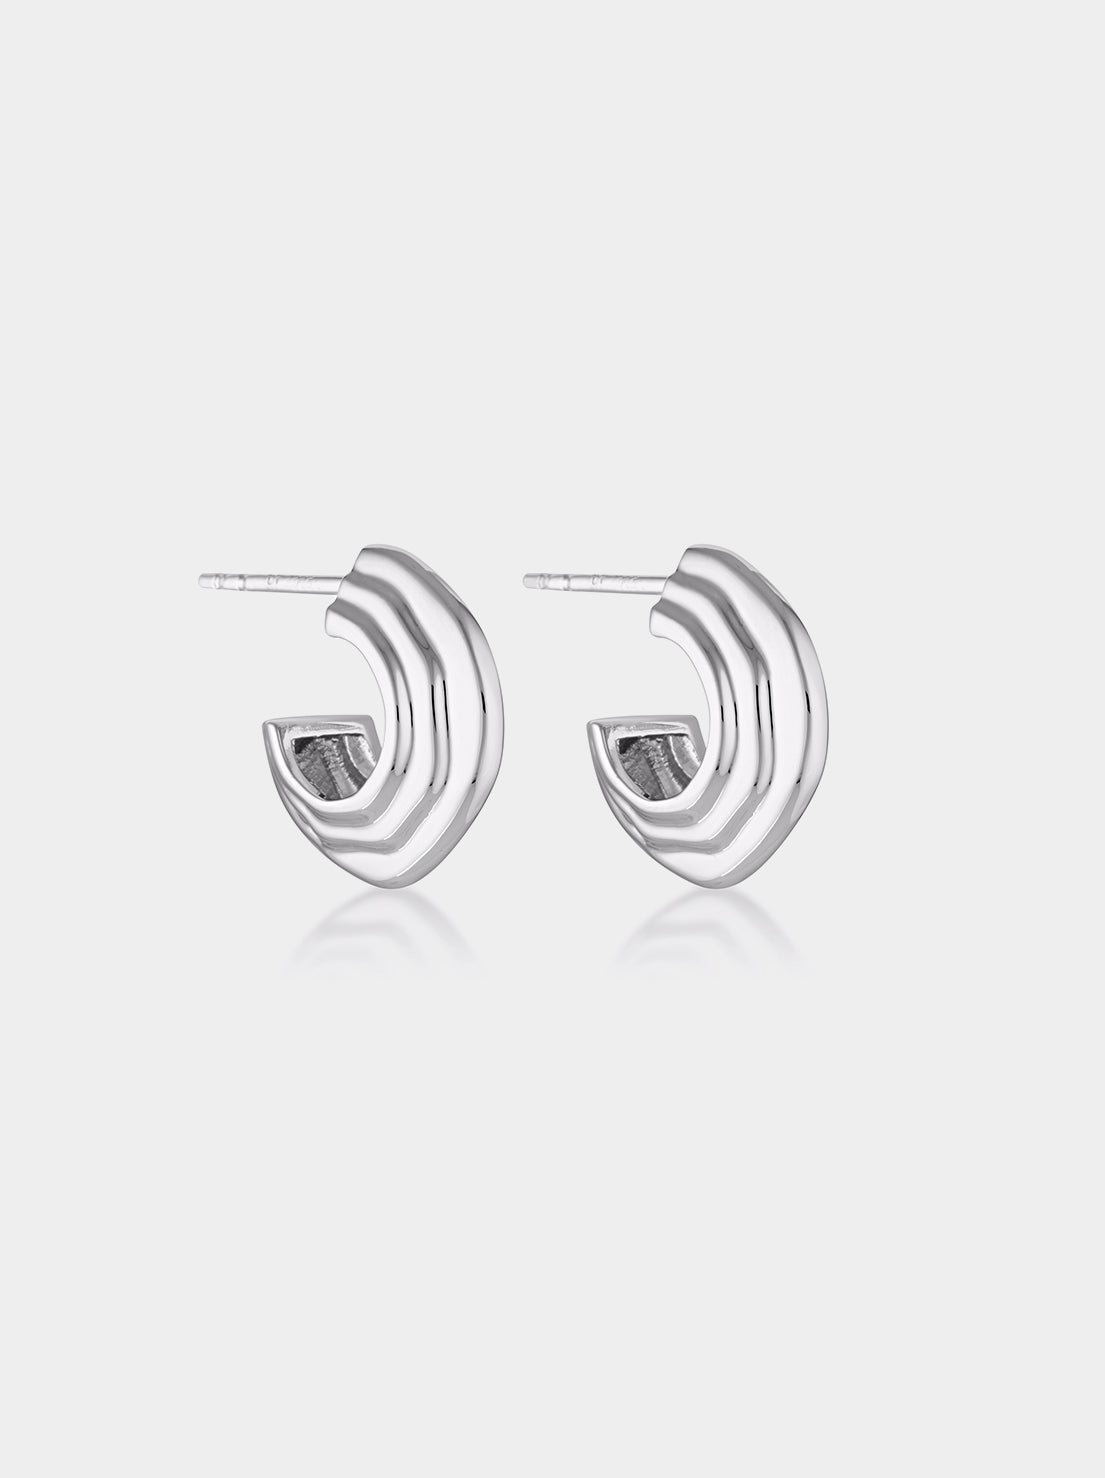 Linda Tahija - Contour Chubby Hoop Earrings - Sterling Silver